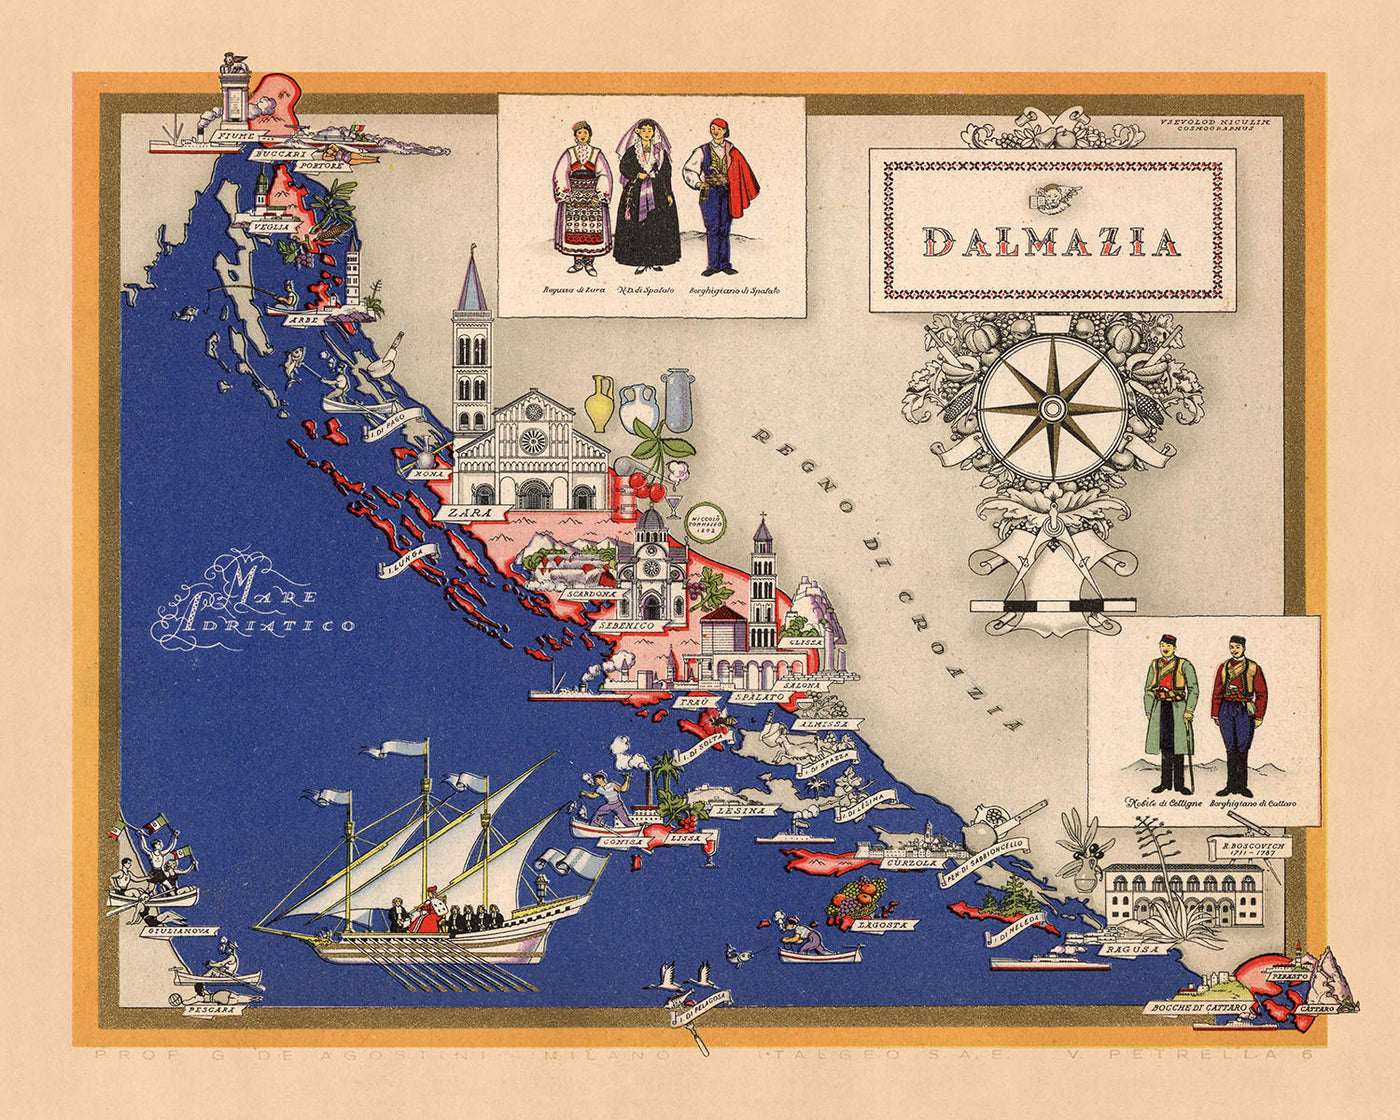 Mapa antiguo de Dalmazia de De Agostini, 1938: Split, Zara, Sebenico, Ragusa, Cattaro